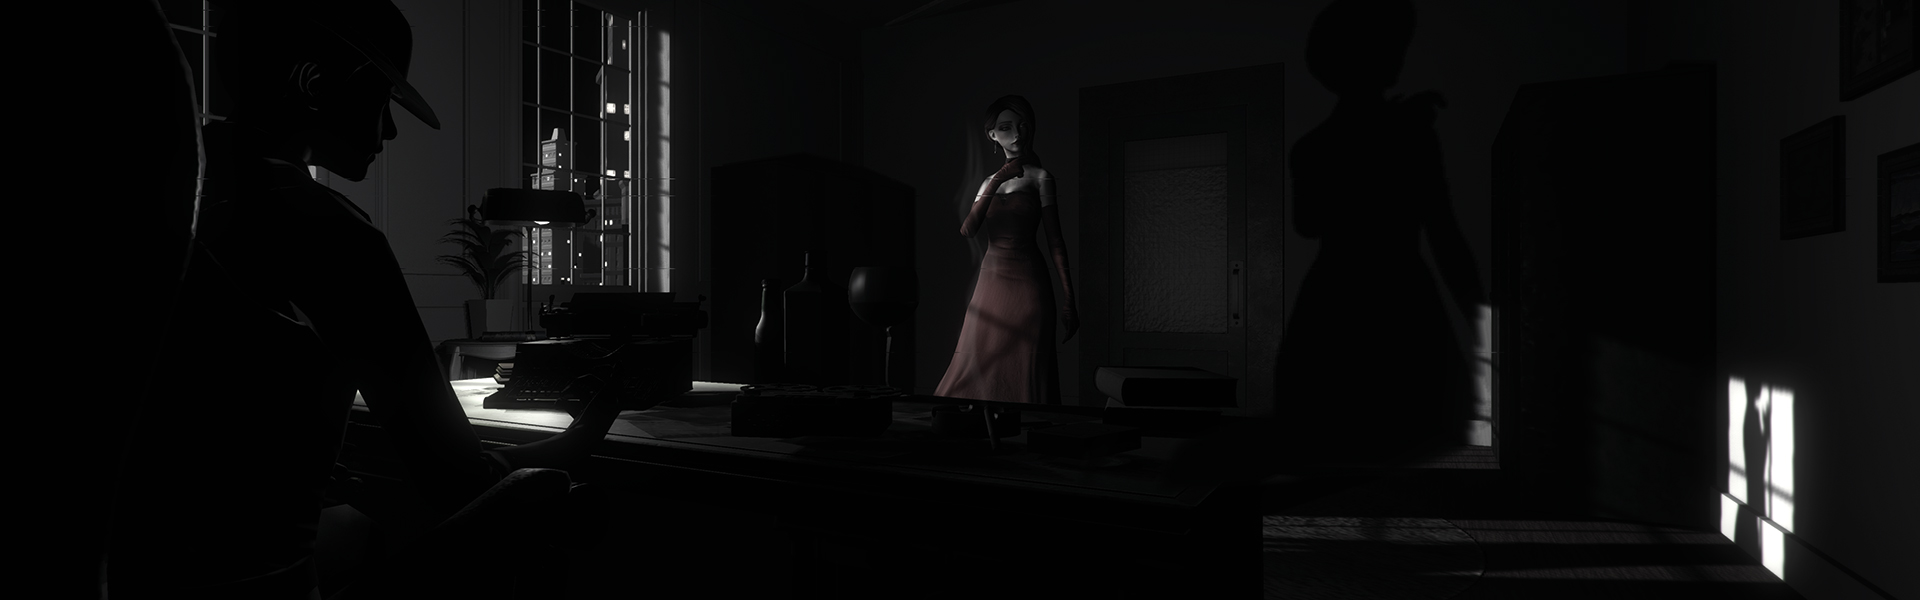 Avance y Soedesco anuncian el lanzamiento de Dollhouse, un título de terror que llegará en 2017 a PS4 y PC